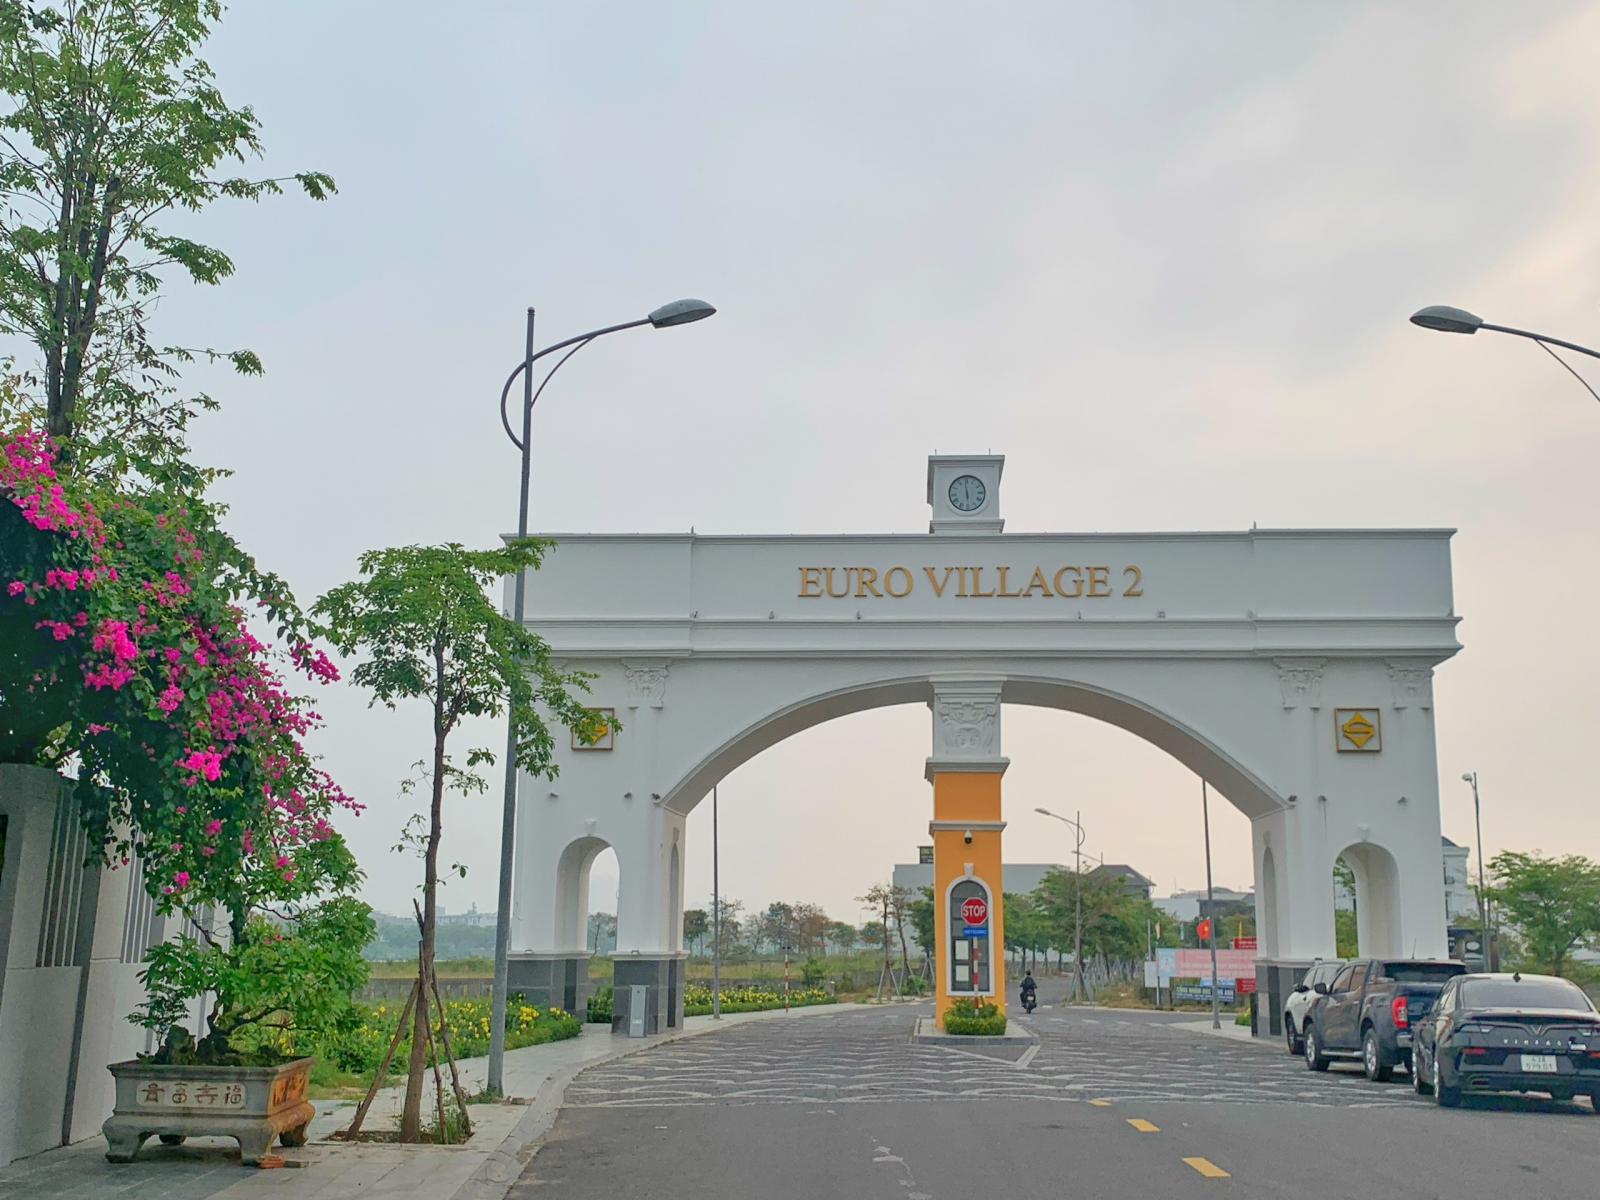 Bán lô đất biệt thự Euro Vilage 2, view mặt Sông Hàn, Đường Giáng Hương 1, Hoà Xuân, Đà Nẵng